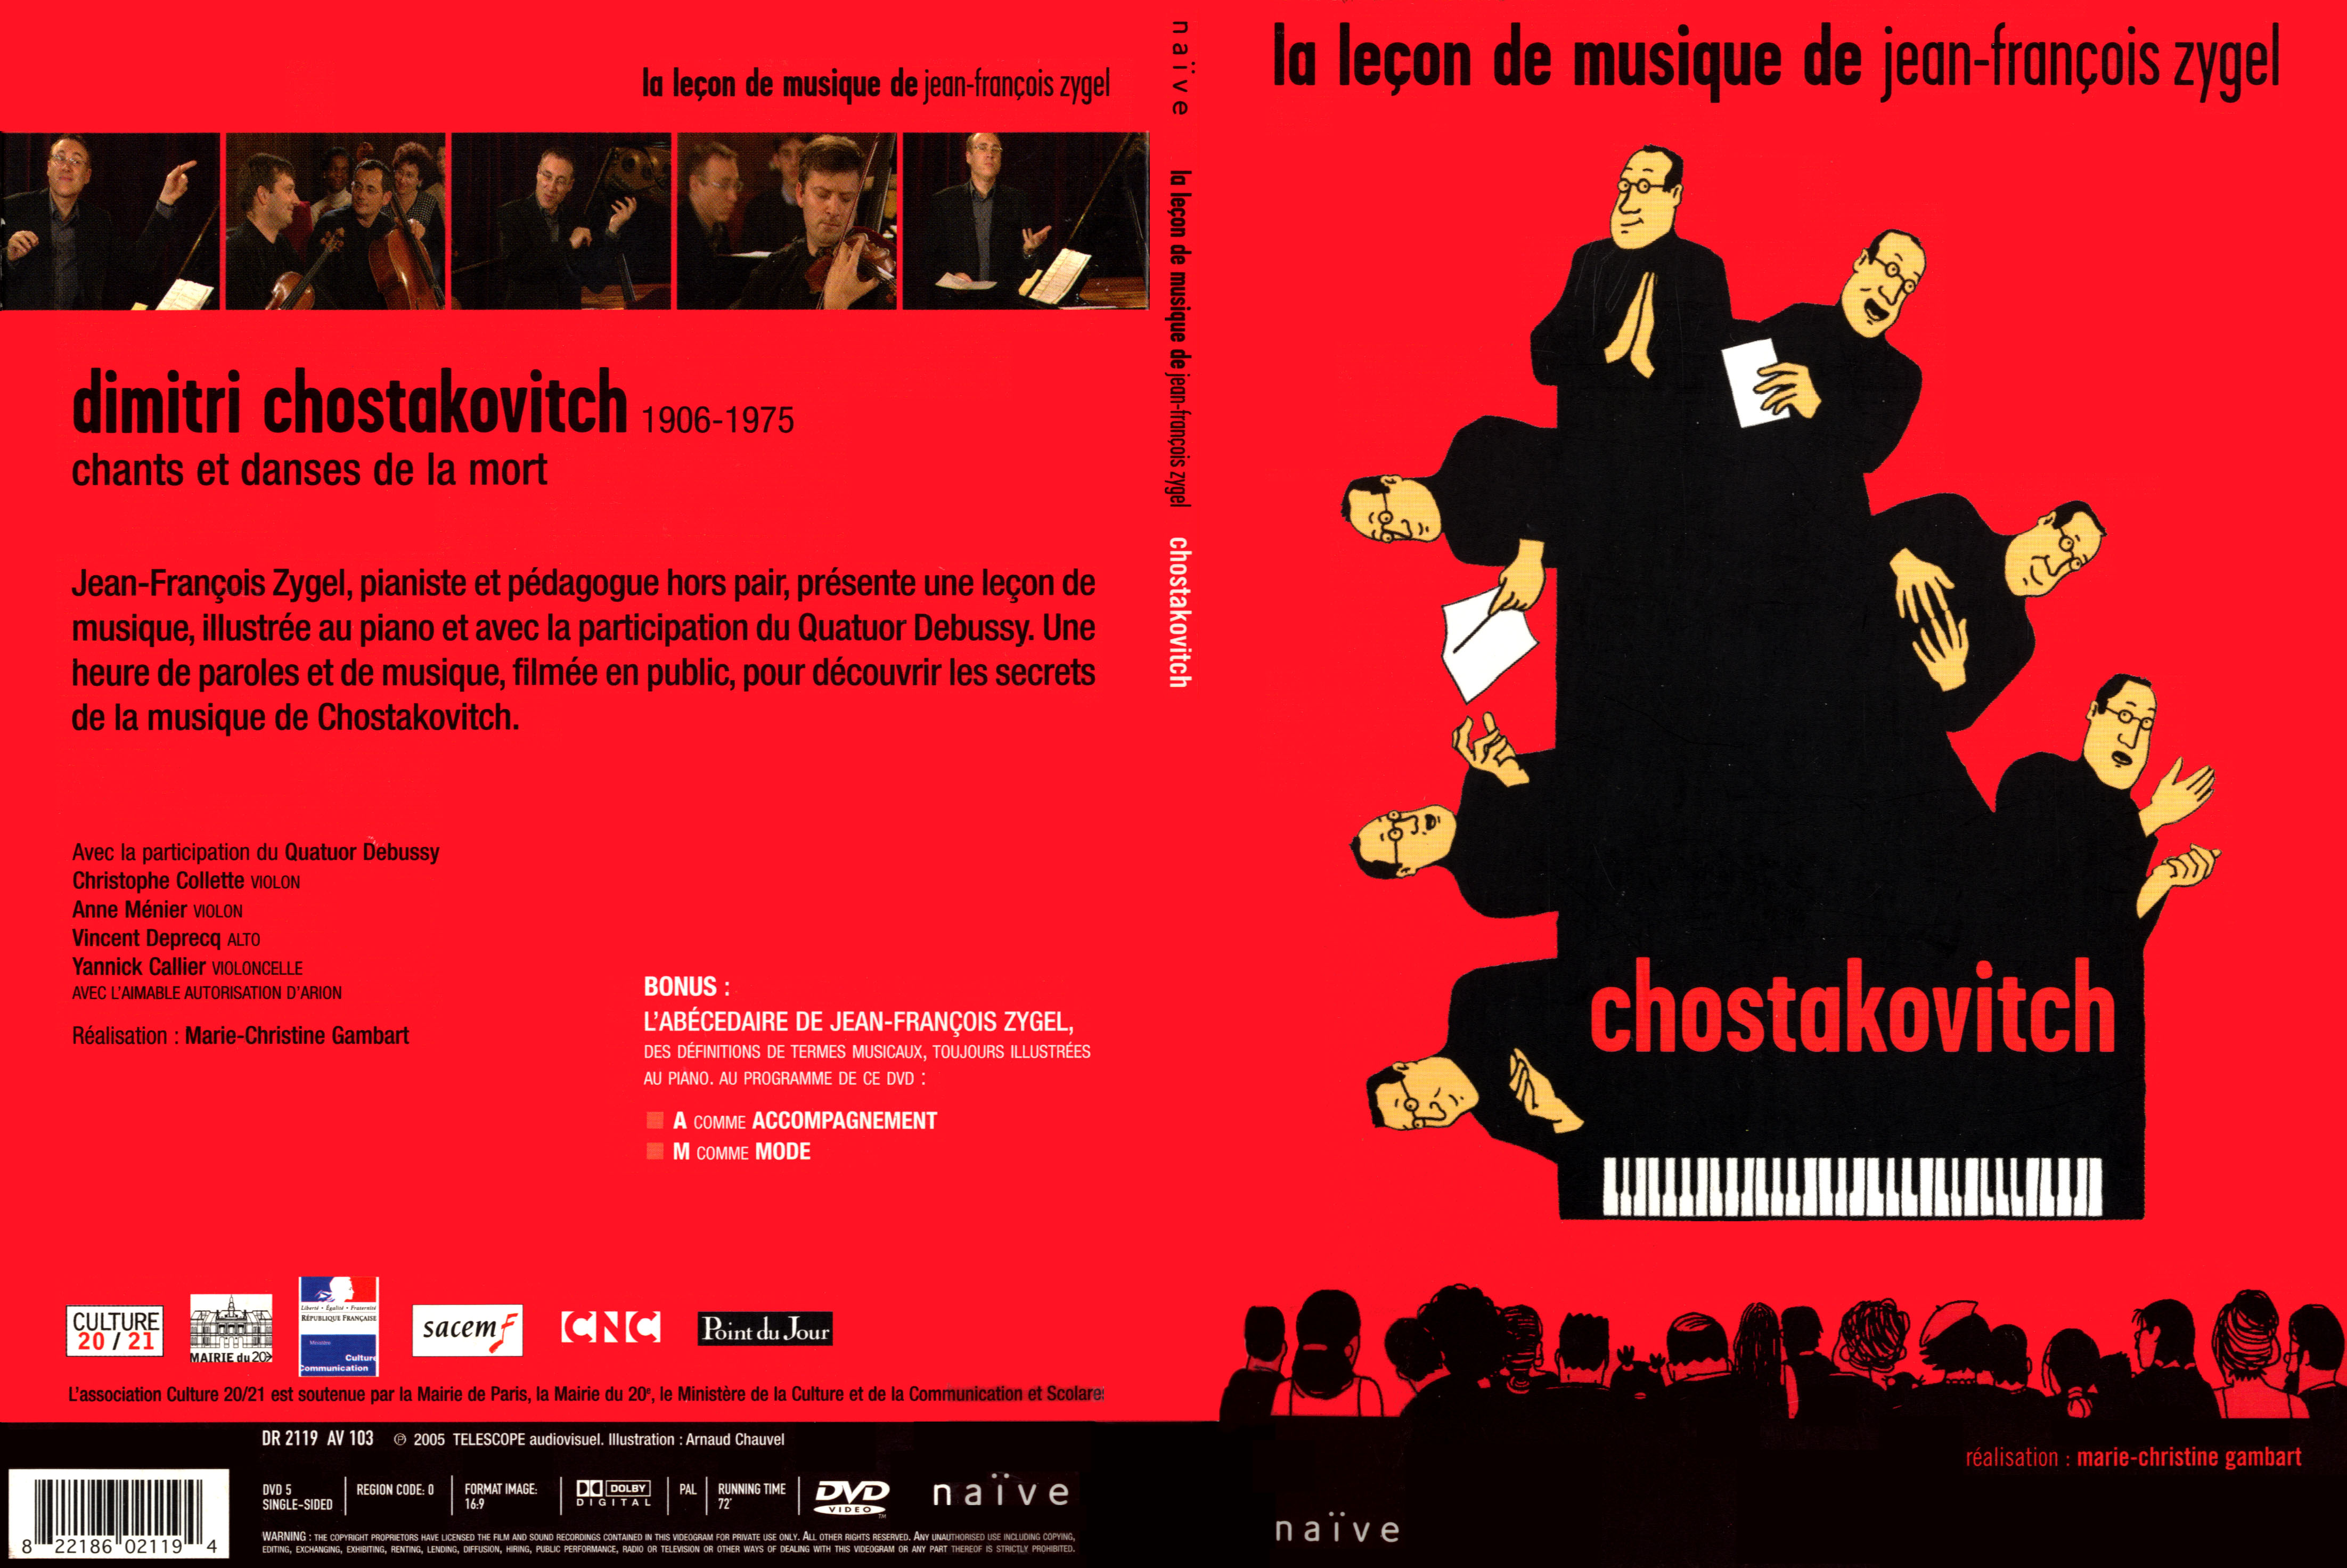 Jaquette DVD La lecon de musique de Jean-Francois Zygel - Chostakovitch